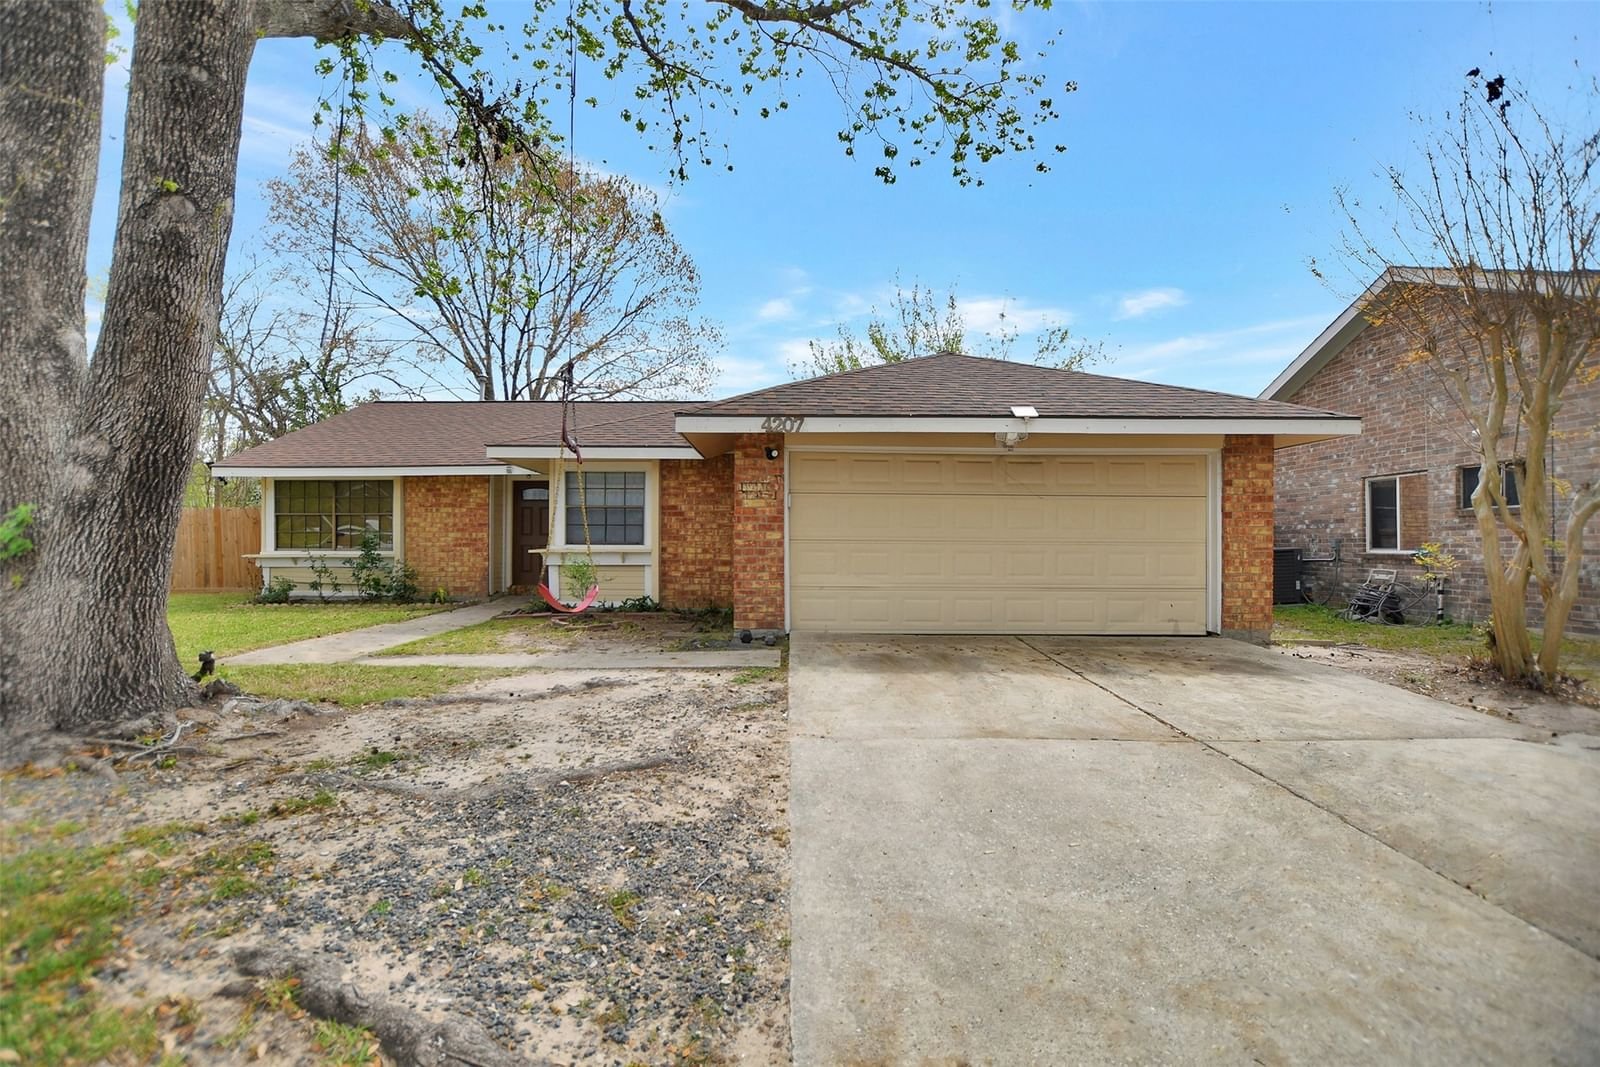 Real estate property located at 4207 Terrace Creek, Harris, Sableriddge Sec 01 Rep, Houston, TX, US